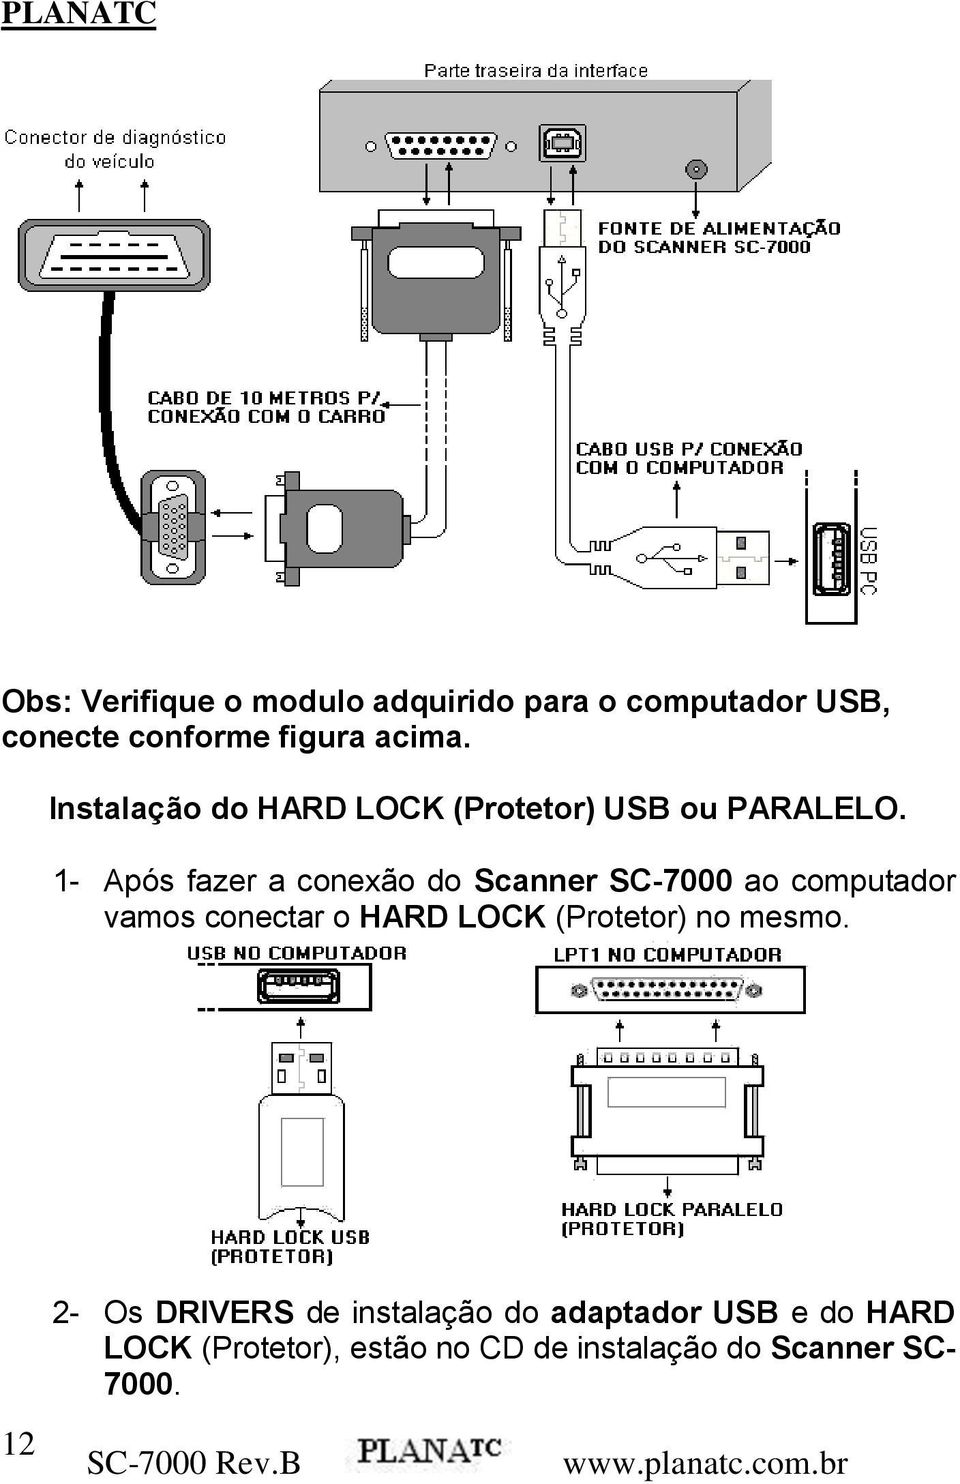 1- Após fazer a conexão do Scanner SC-7000 ao computador vamos conectar o HARD LOCK